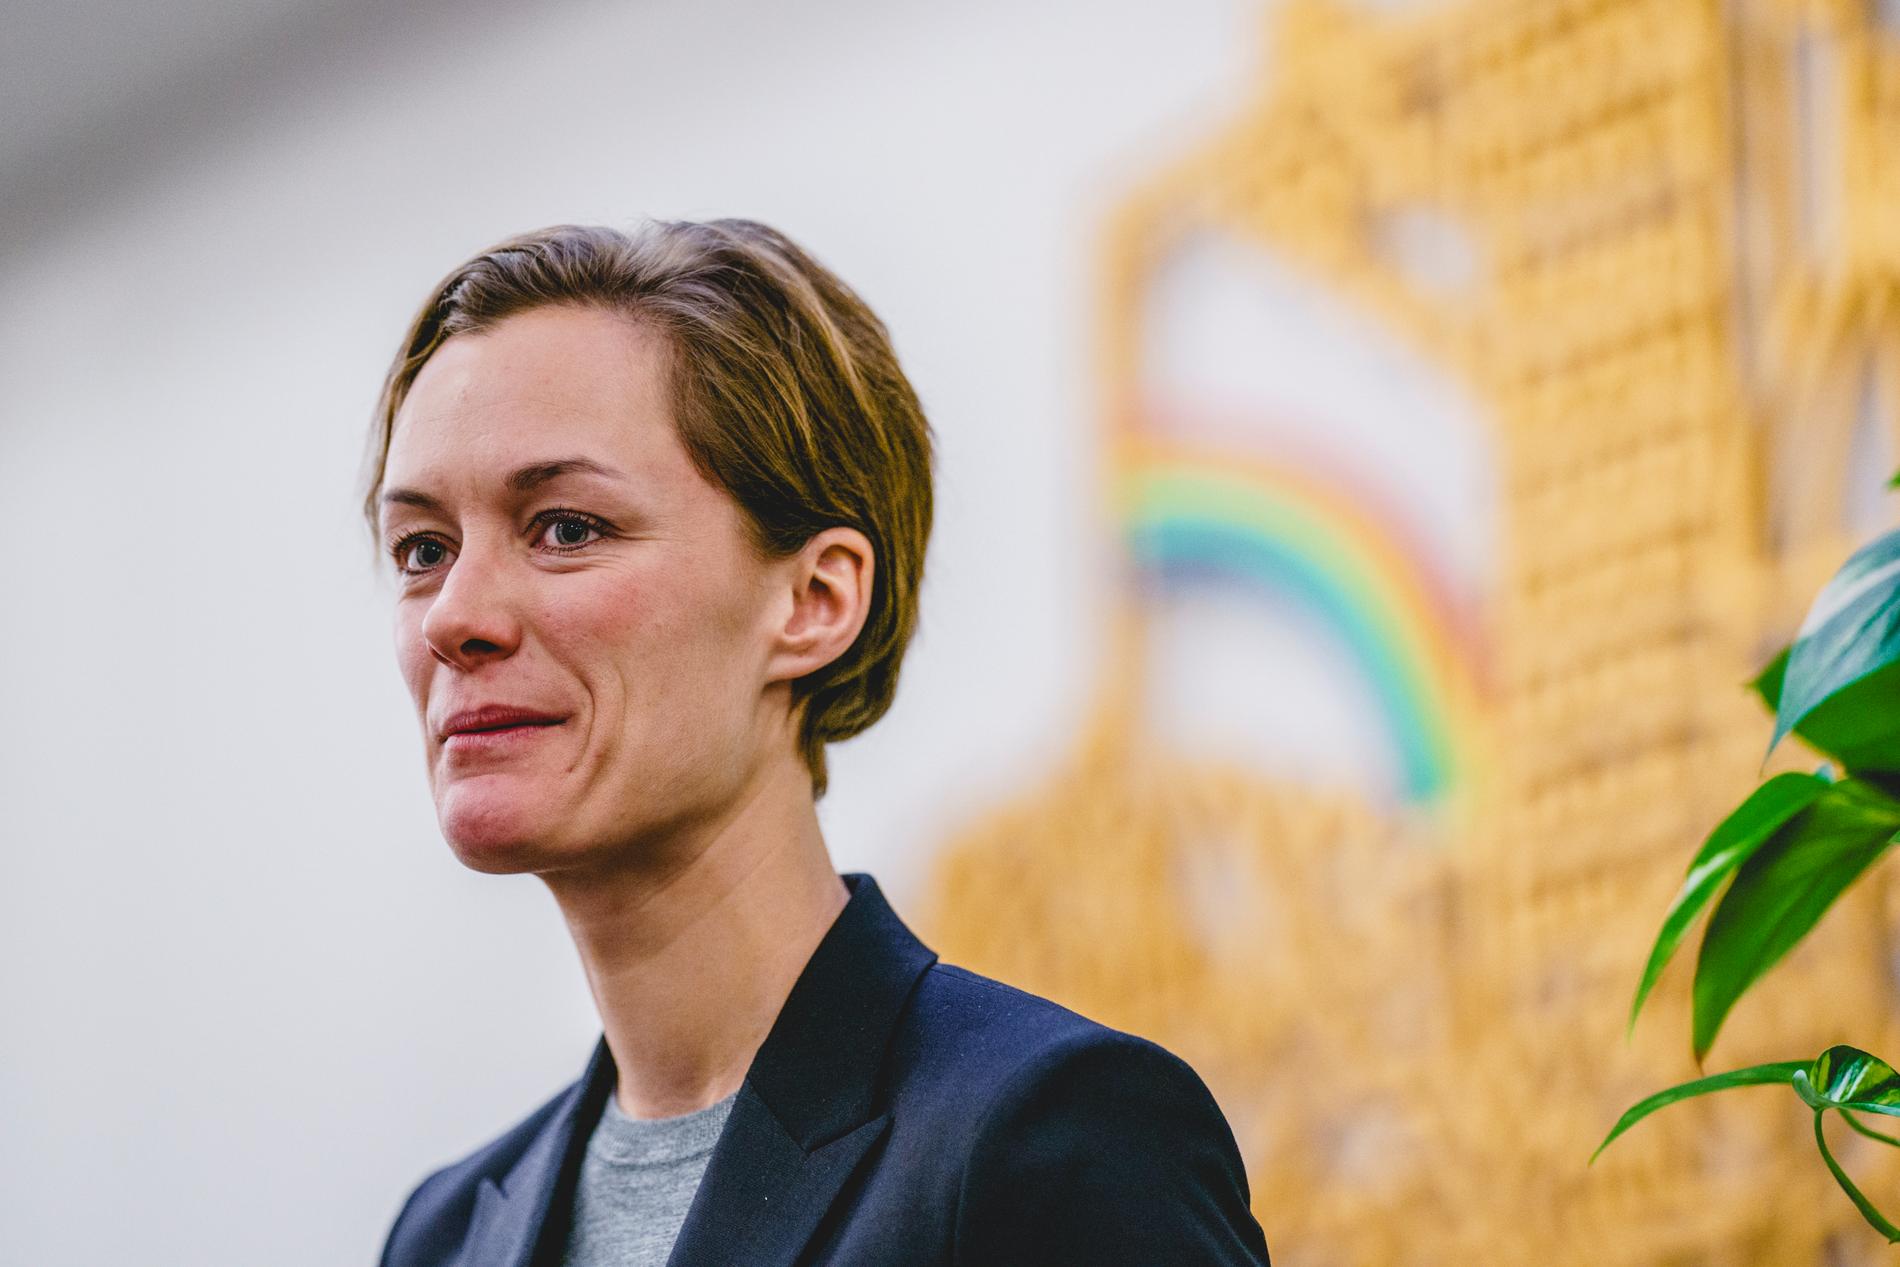 Norges regering utreder om det borde införas en tredje könskategori, meddelar minister Anette Trettebergstuen. Arkivbild.